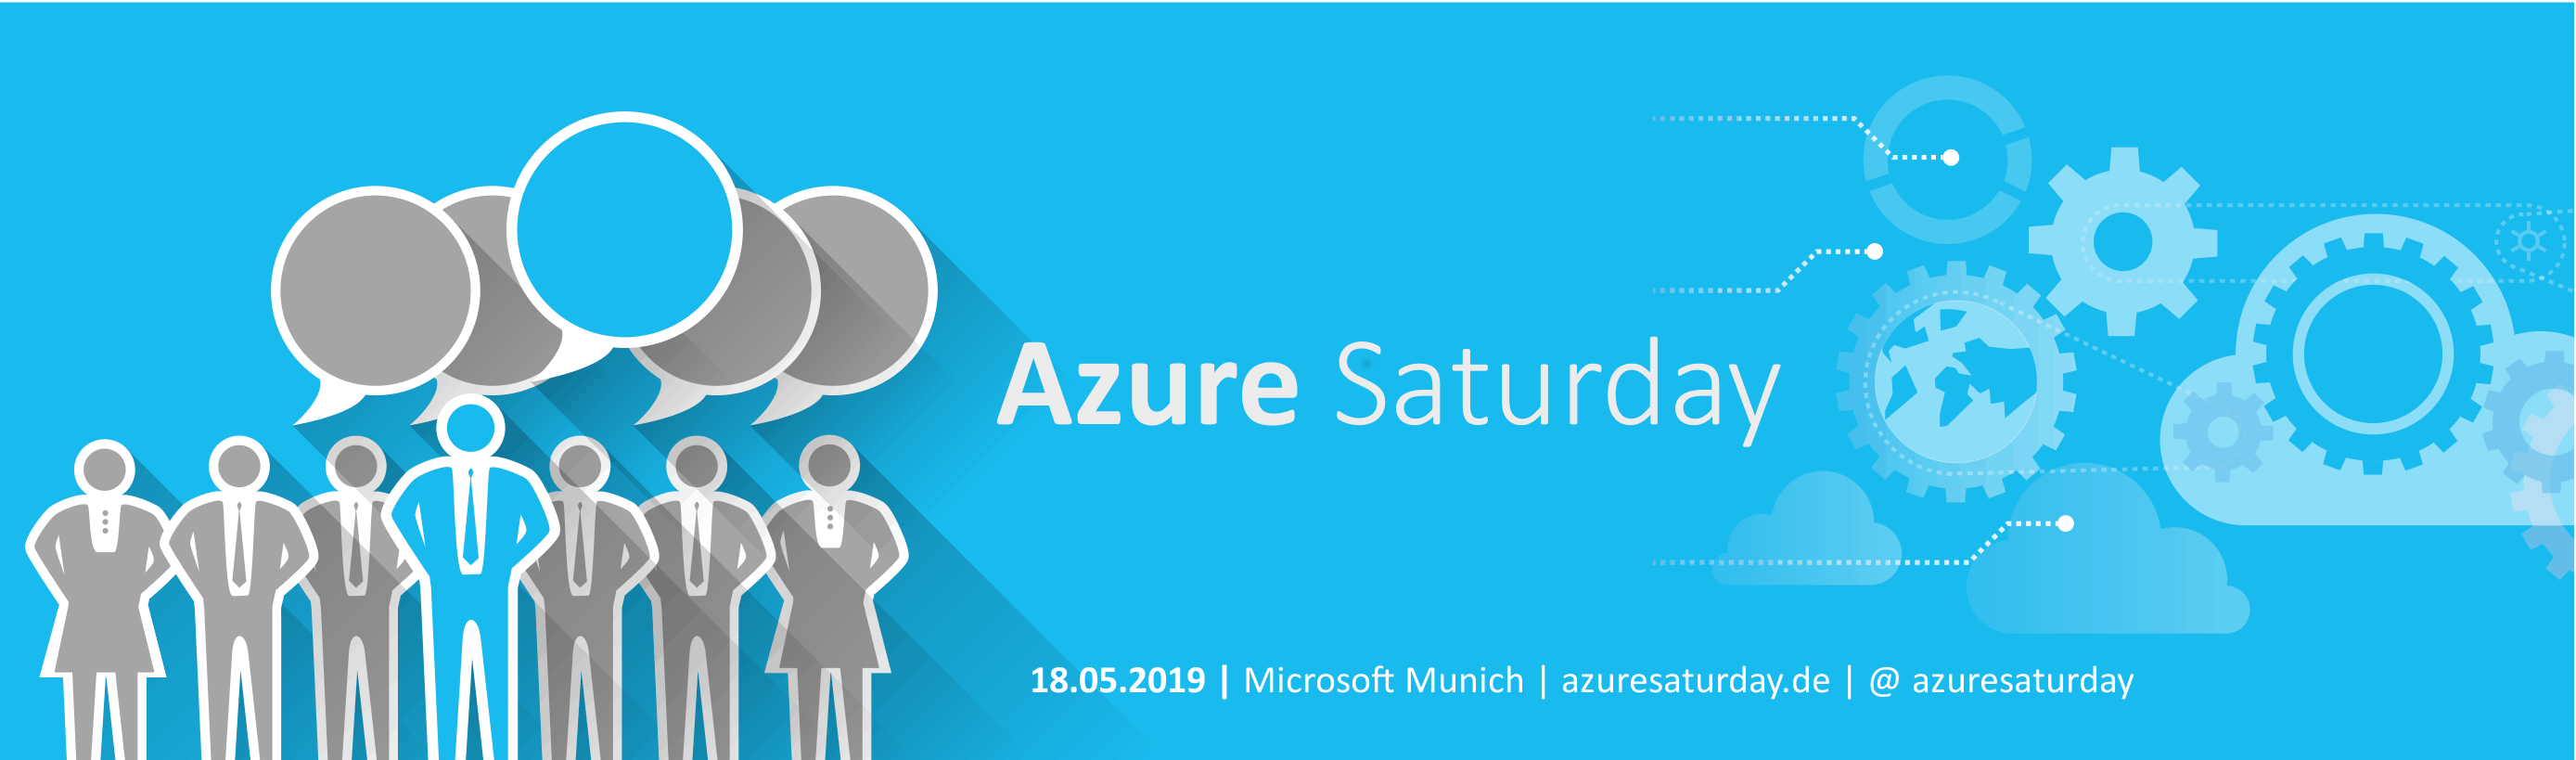 Azure Saturday 2019 Munich